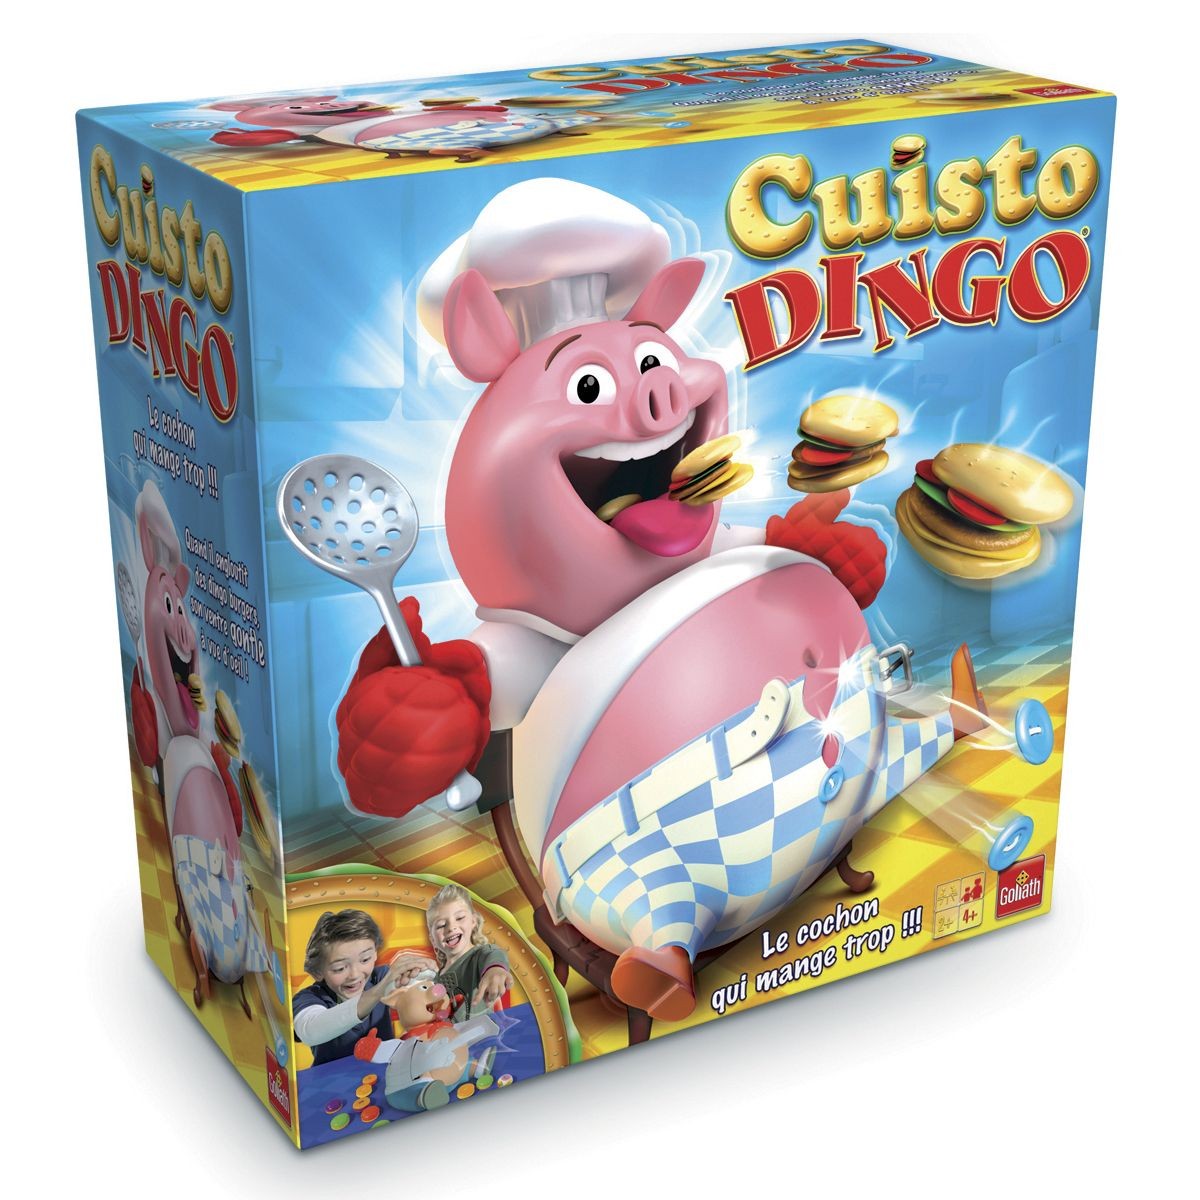 Cuisto Dingo - Jeux classiques